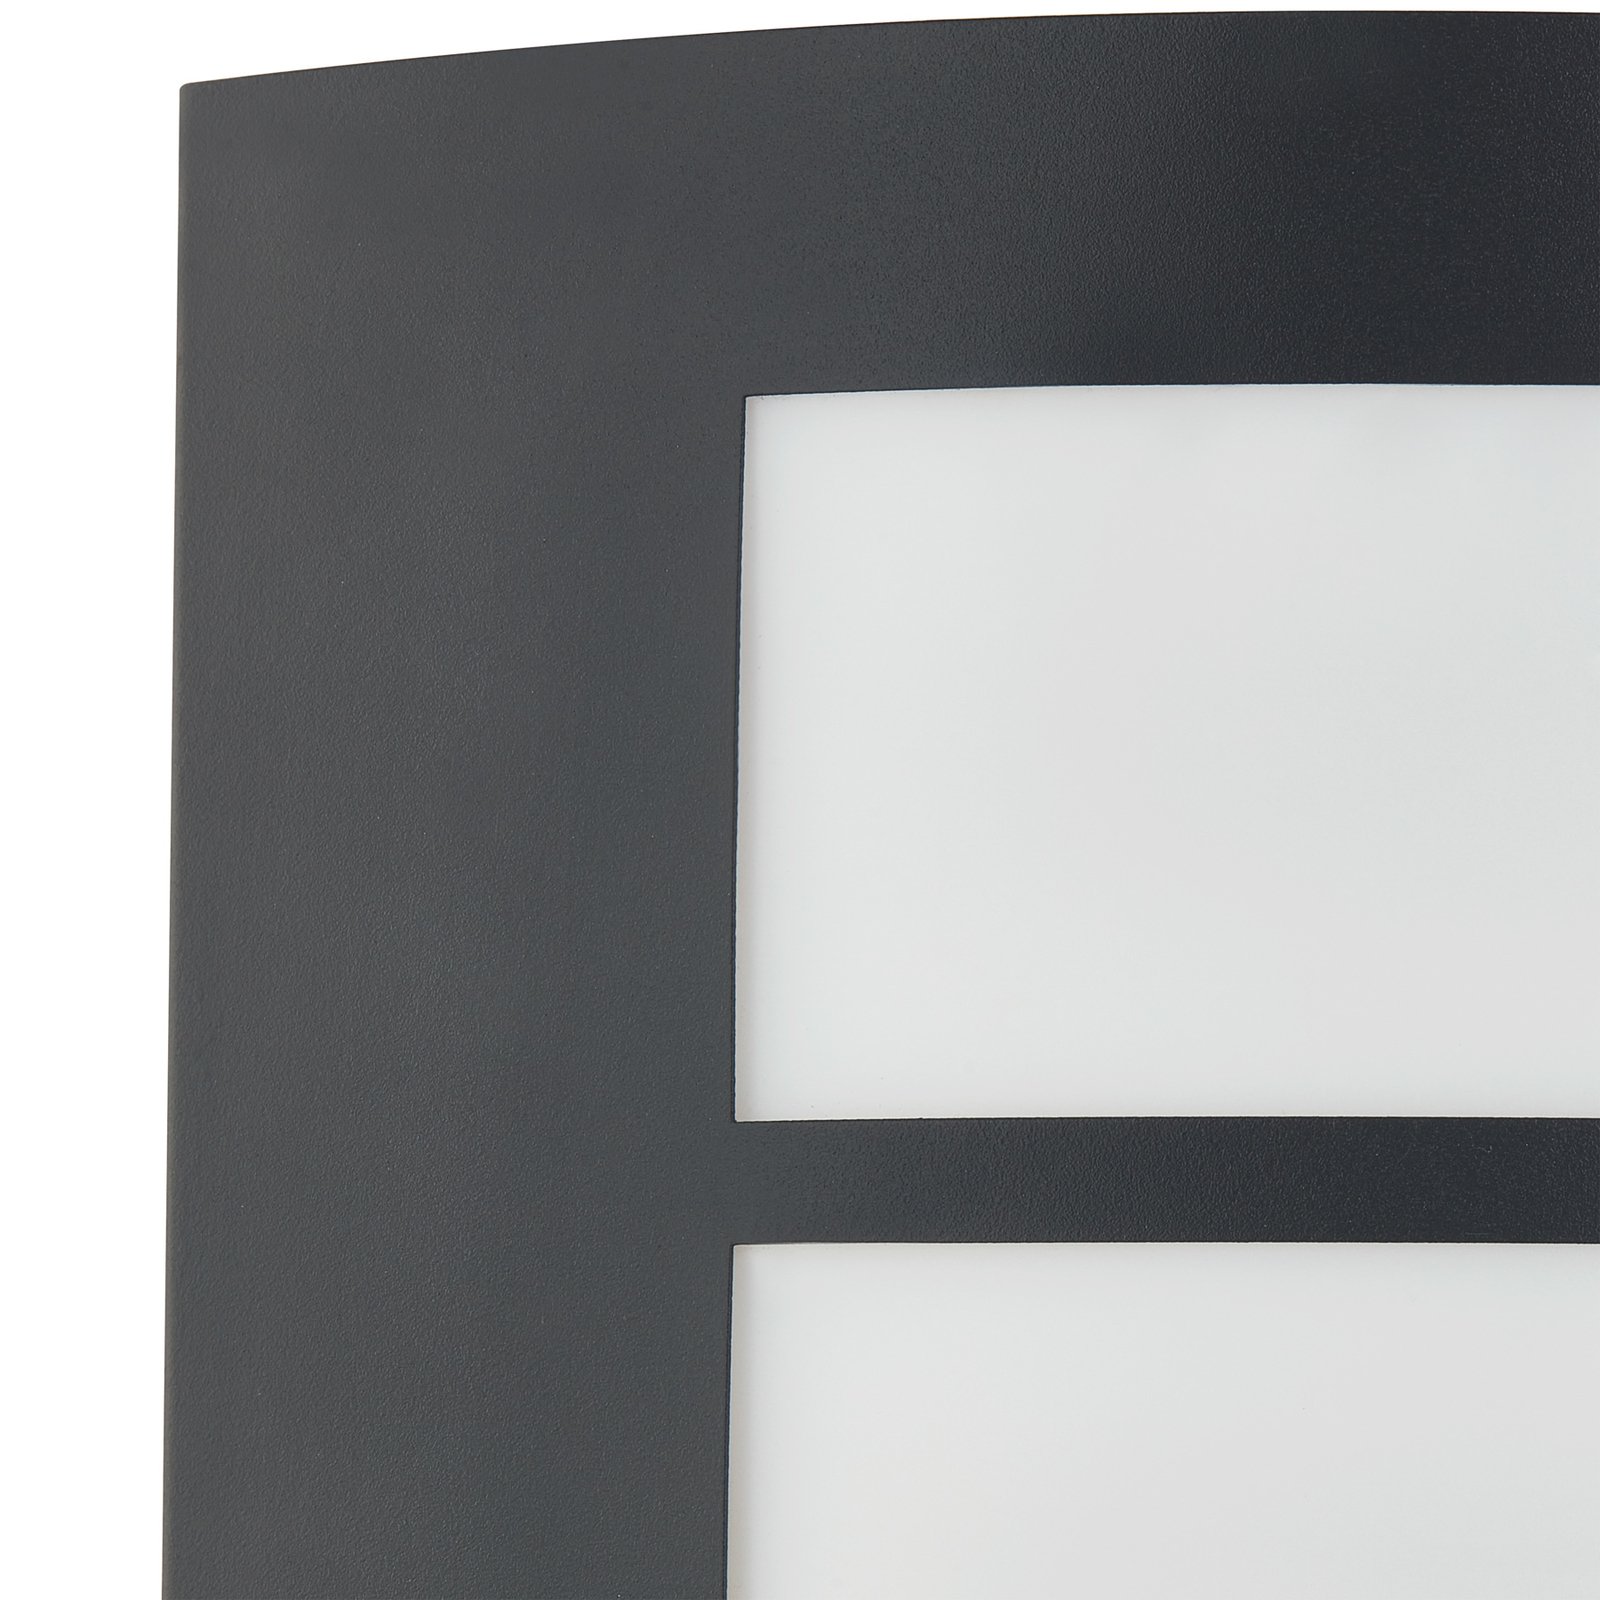 Lindby buitenwandlamp Vimal, E27, 26 cm, zwart, aluminium